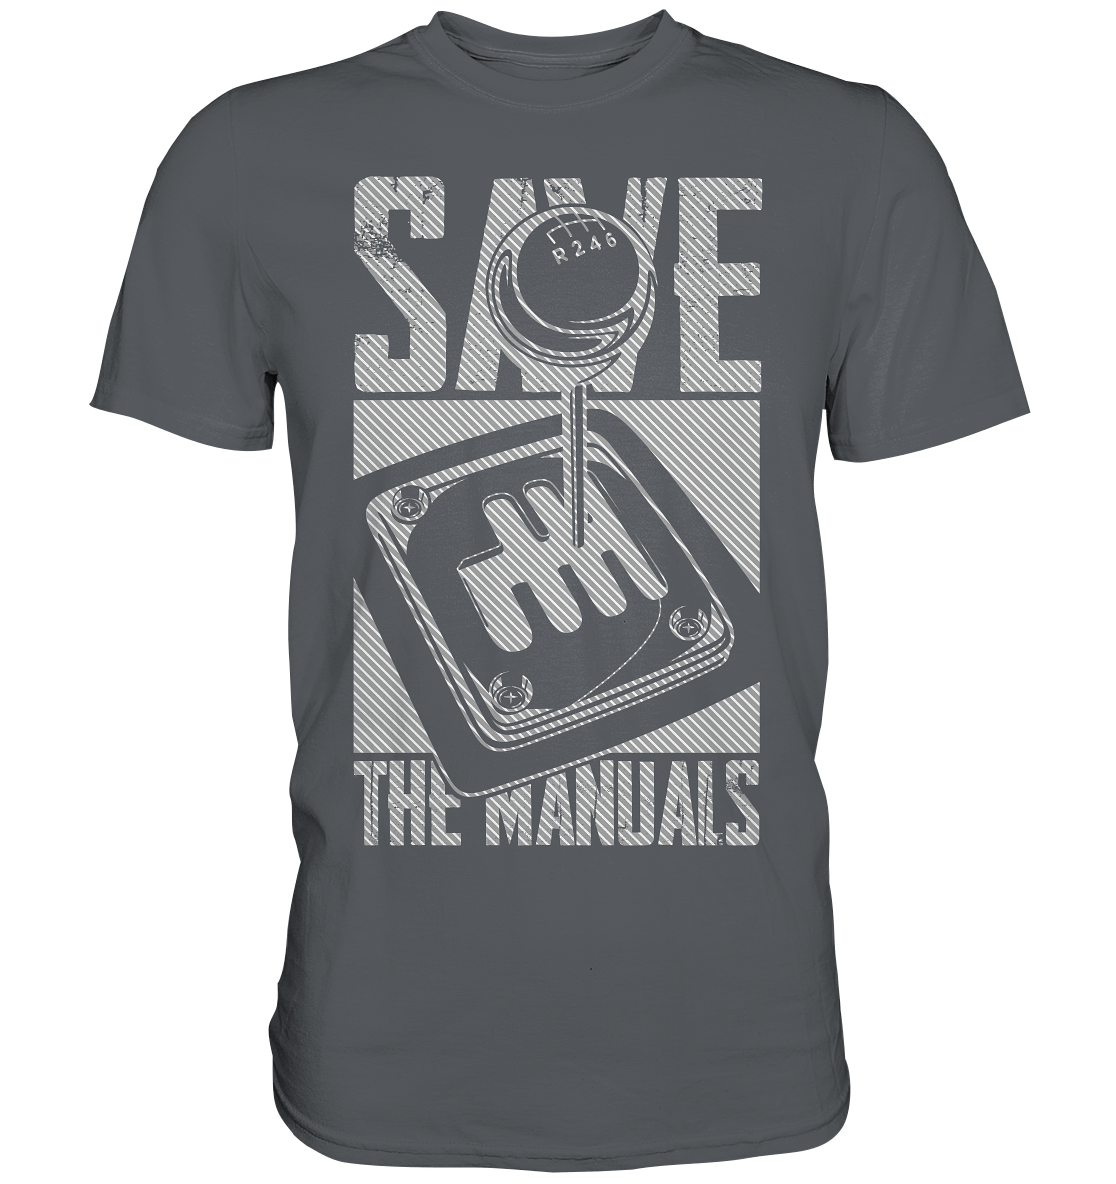 Save the Manuals hell - Premium Shirt - MotoMerch.de